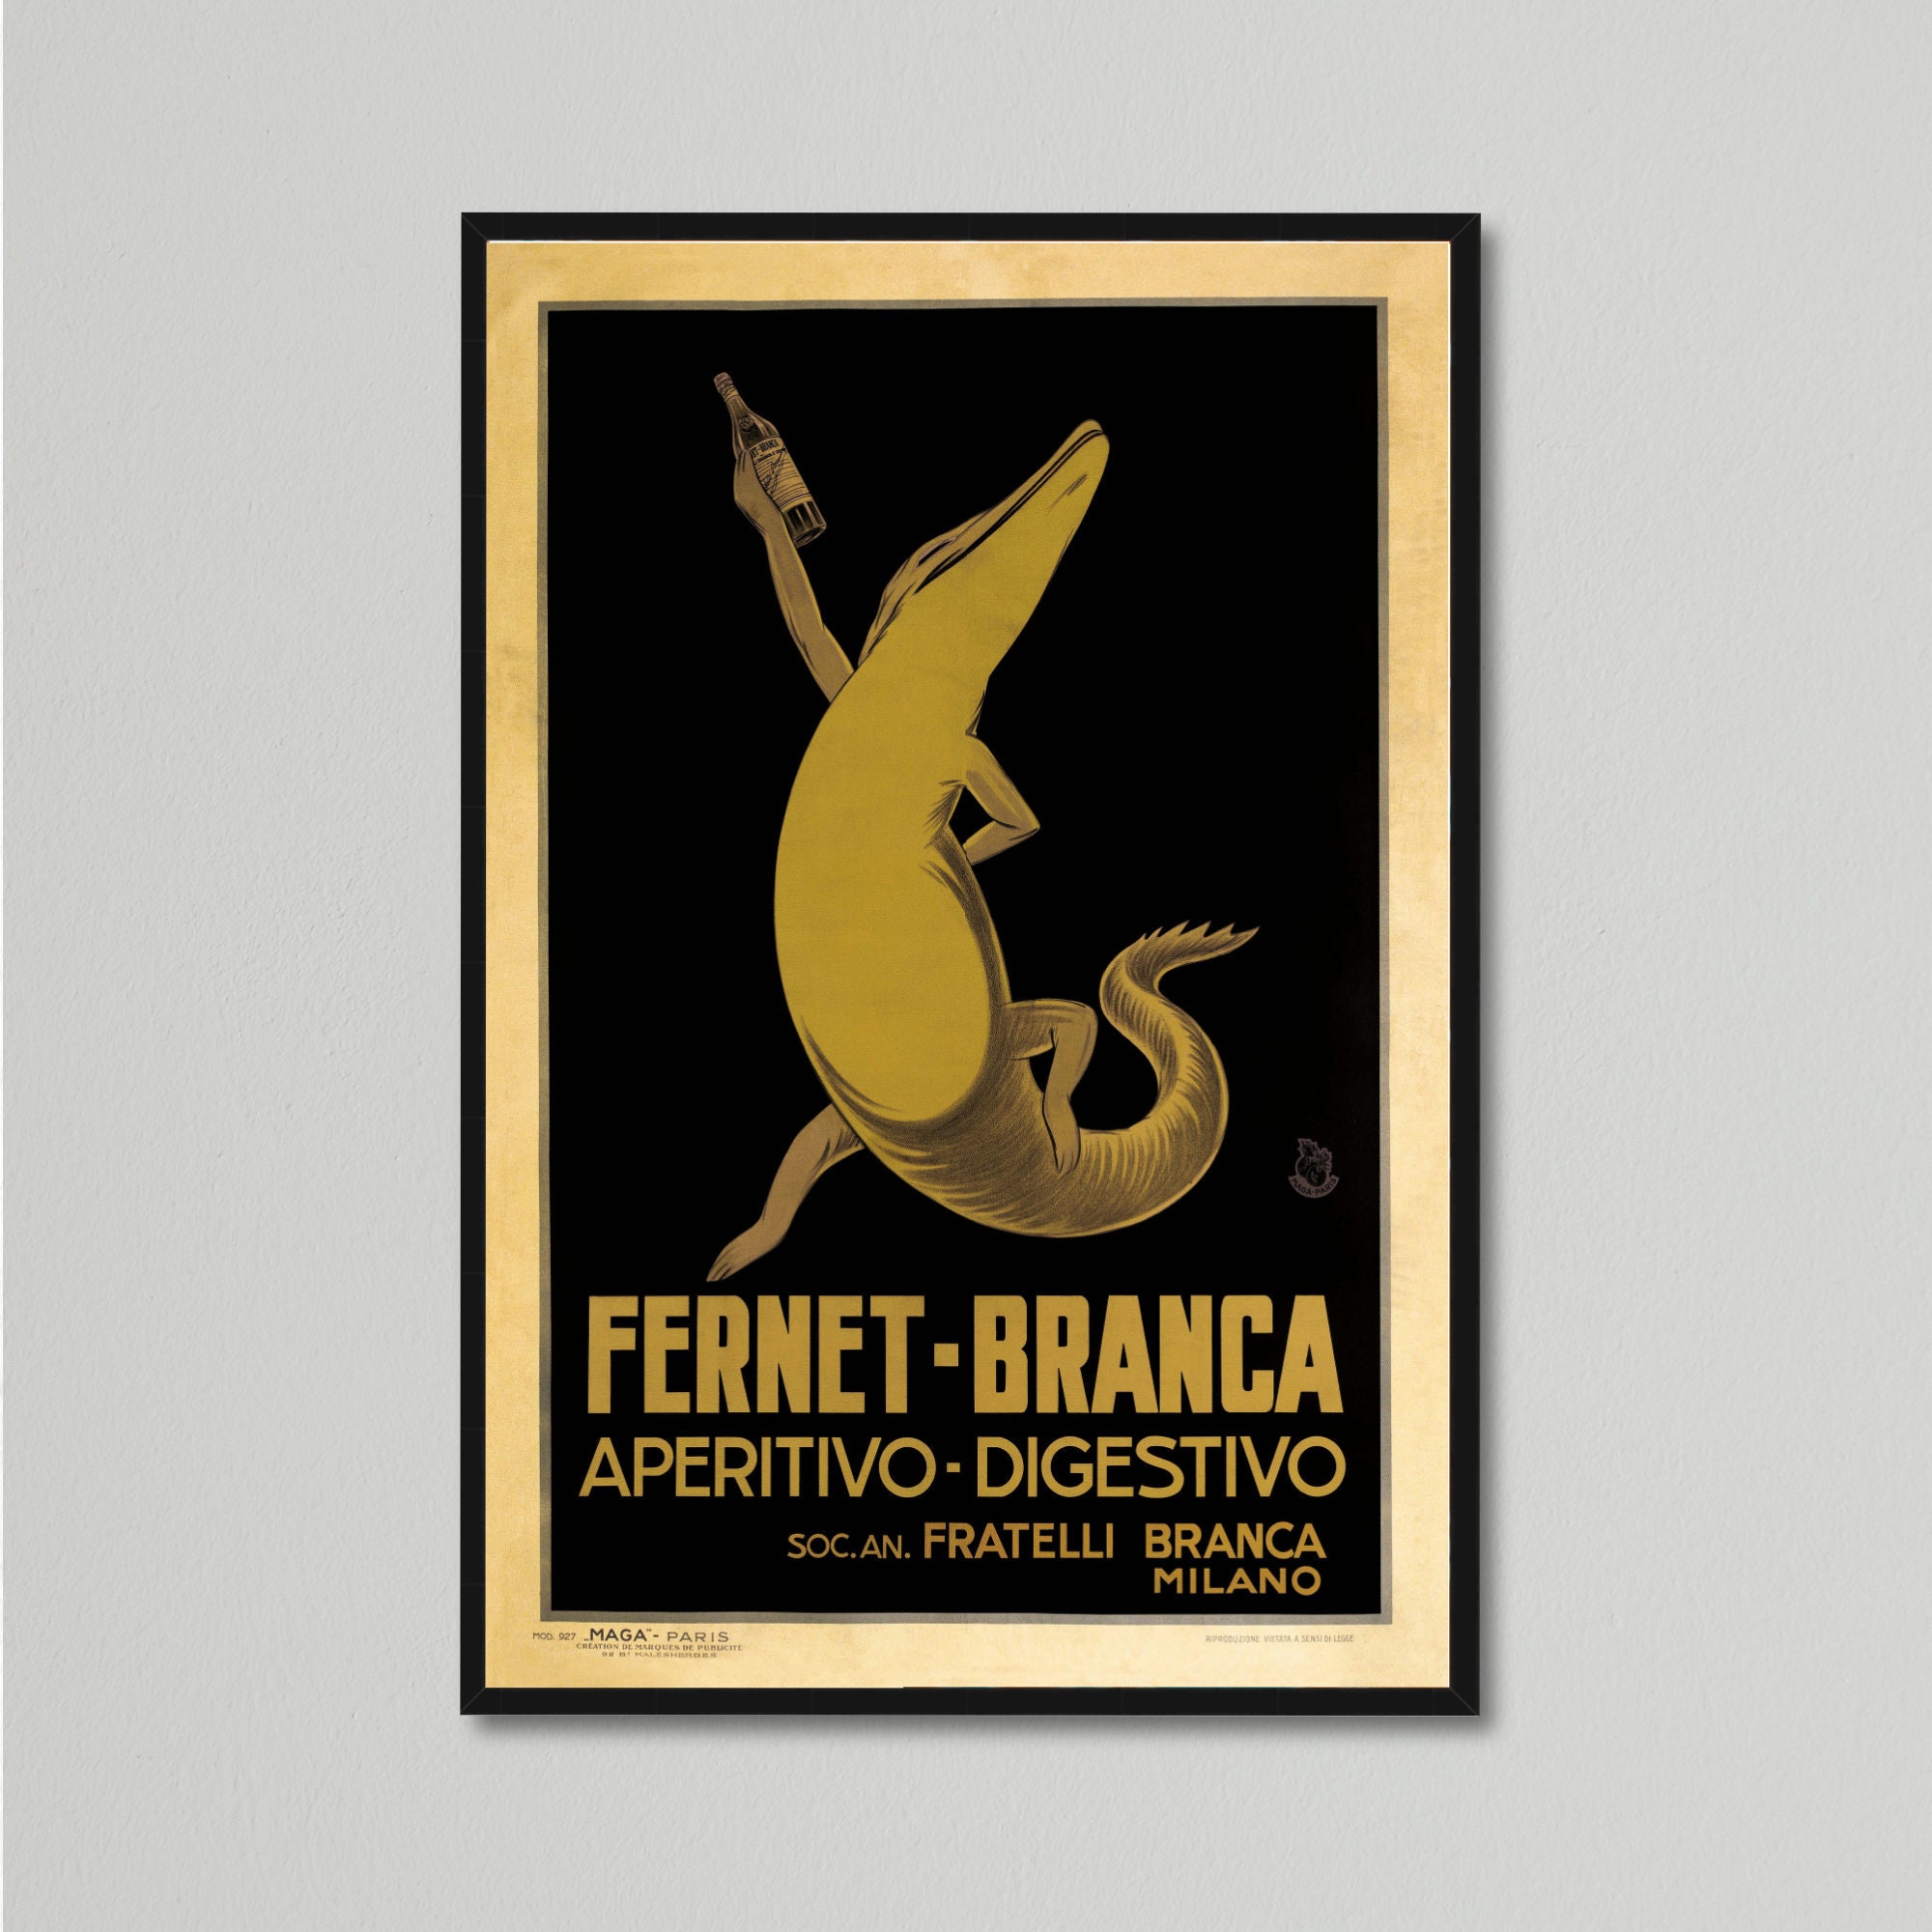 Vintage Art Deco Food & Drink Poster Fernet-Branca - Etsy